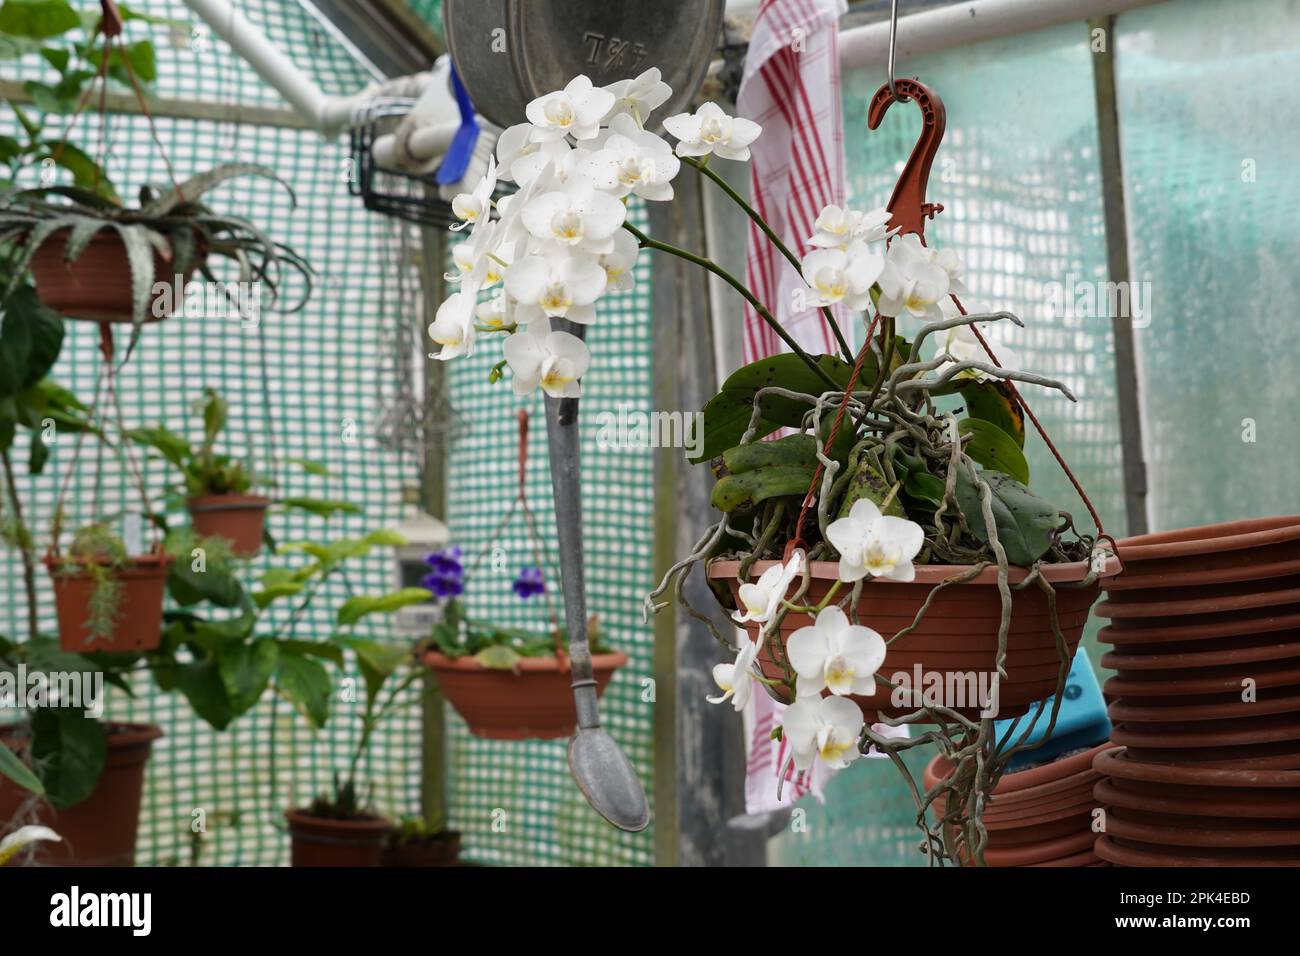 Orchideenpflanze mit weißen Blumen in einem Plastiktopf, der in einem Gewächshaus hängt. Auf dem unscharfen Hintergrund werden exotische Pflanzen angebaut. Stockfoto